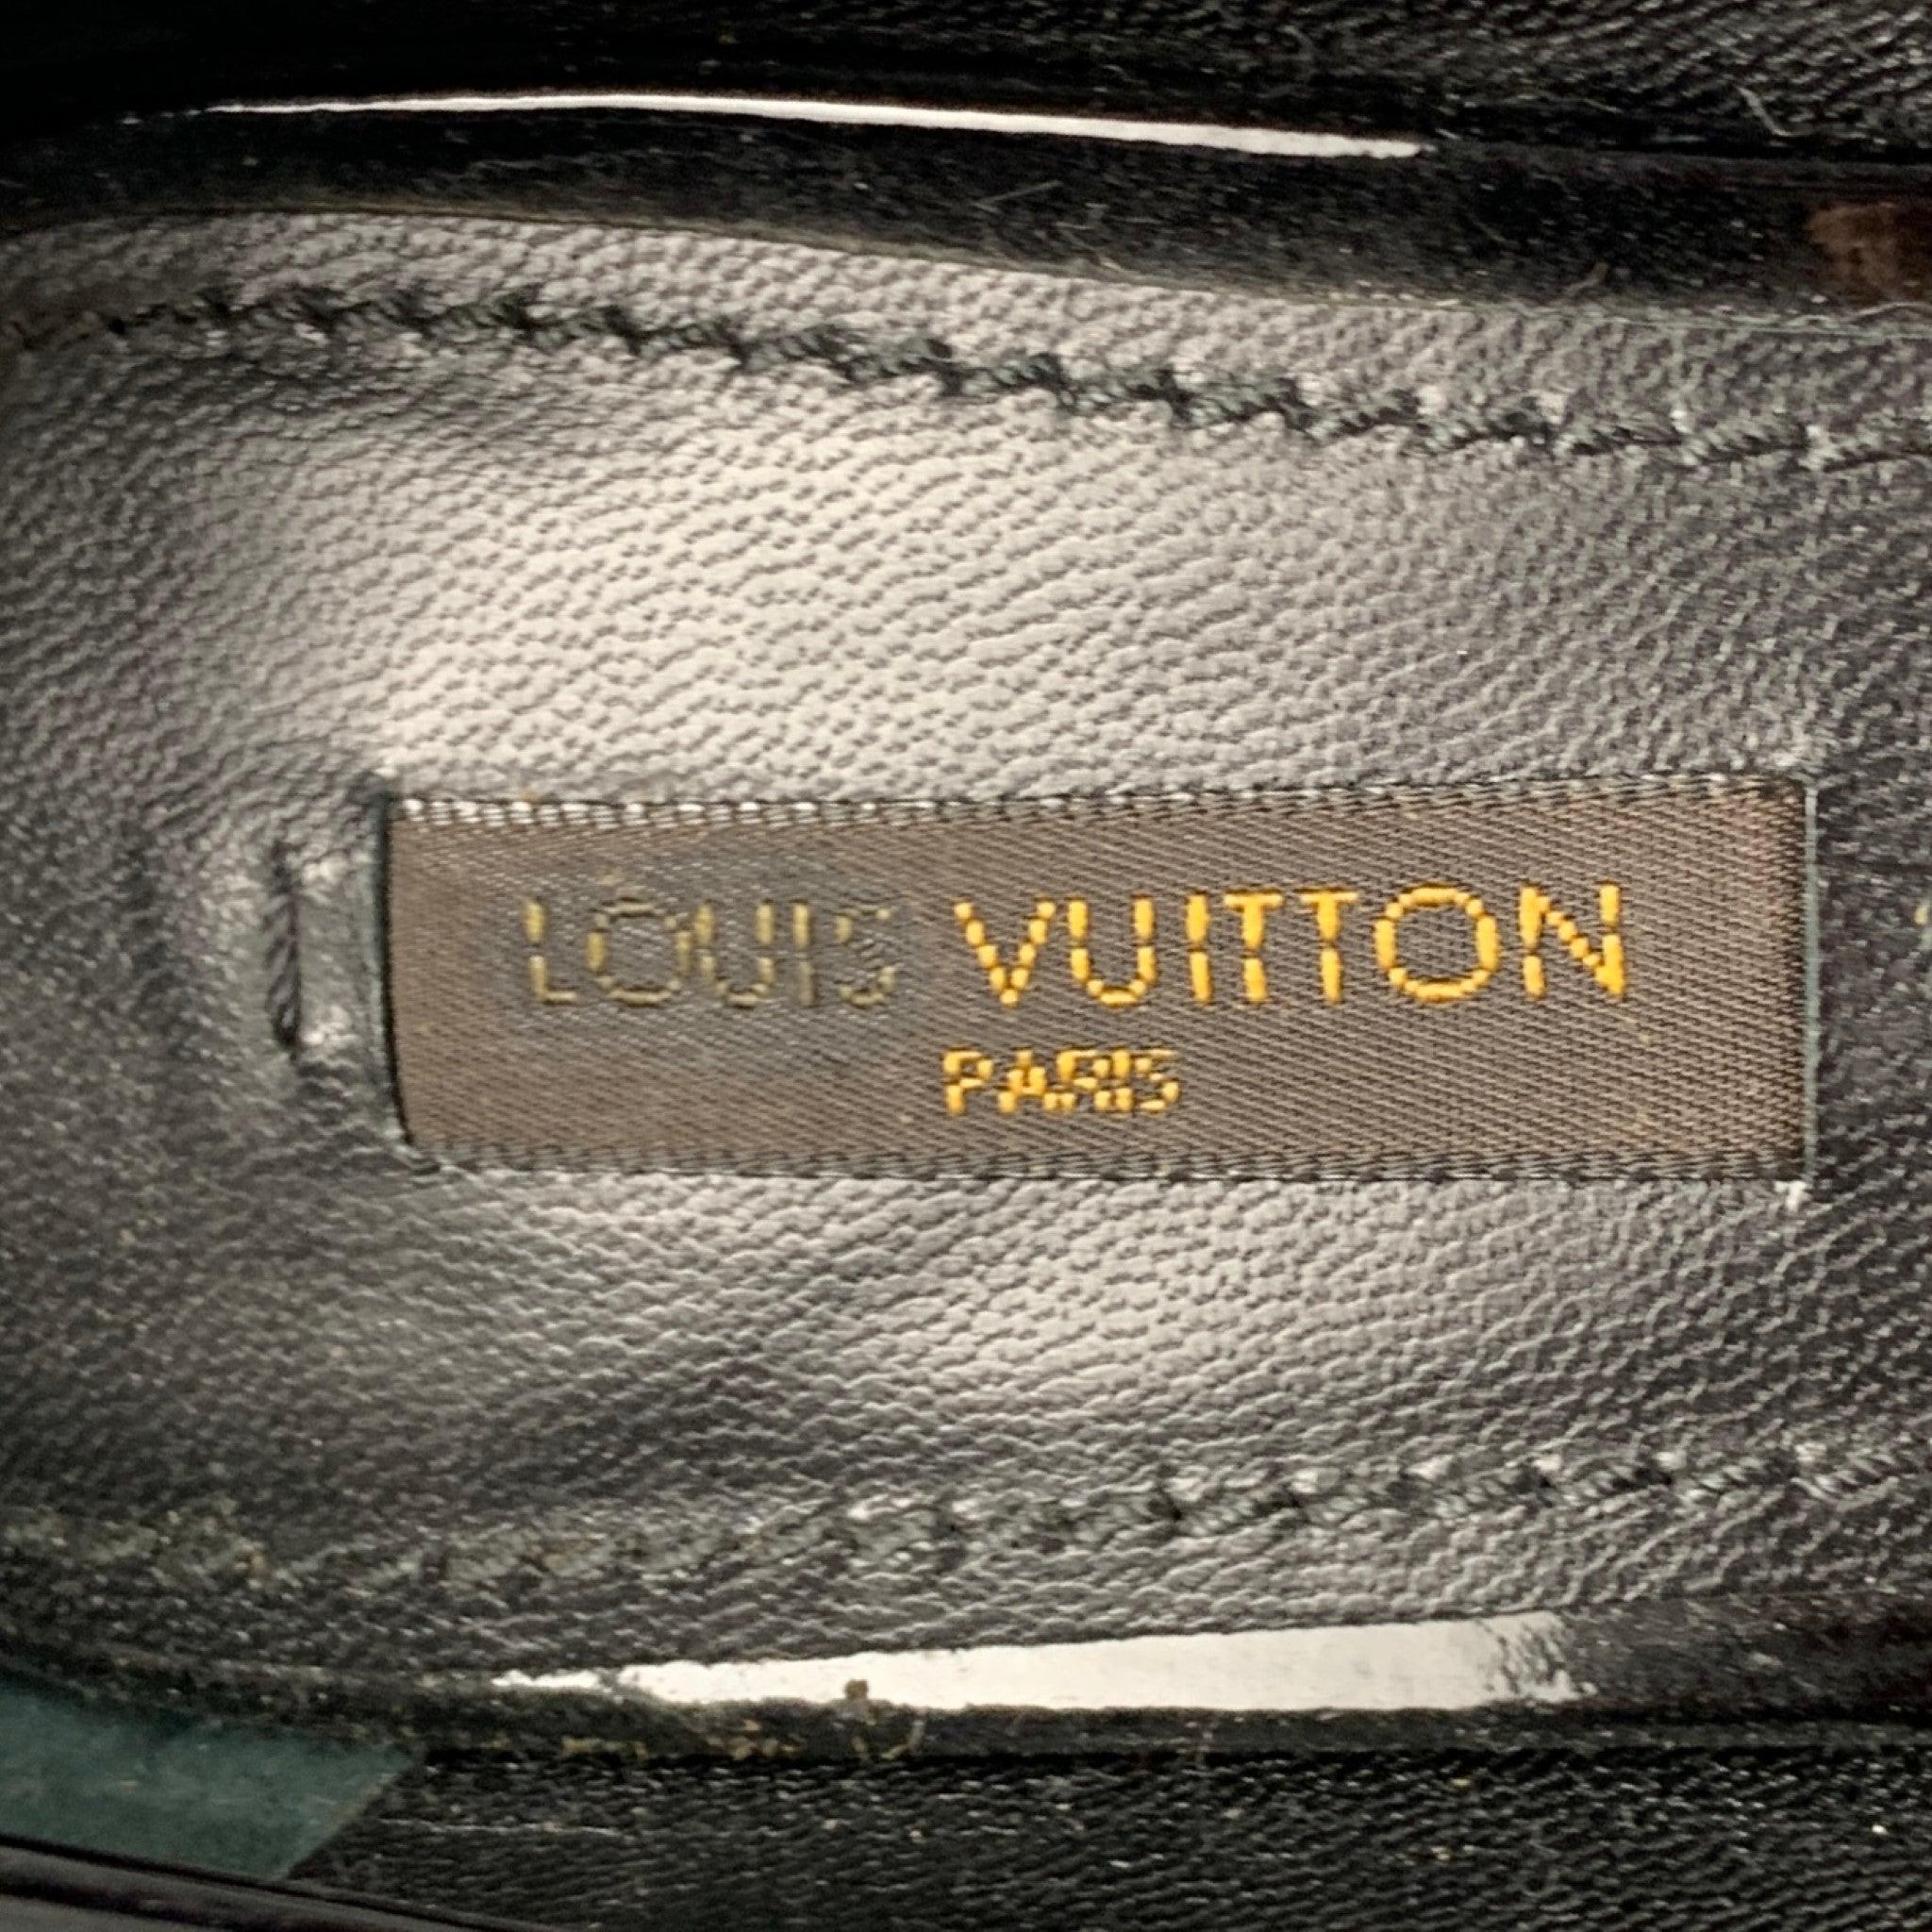 LOUIS VUITTON Size 7 Black Patent Leather Pumps For Sale 3